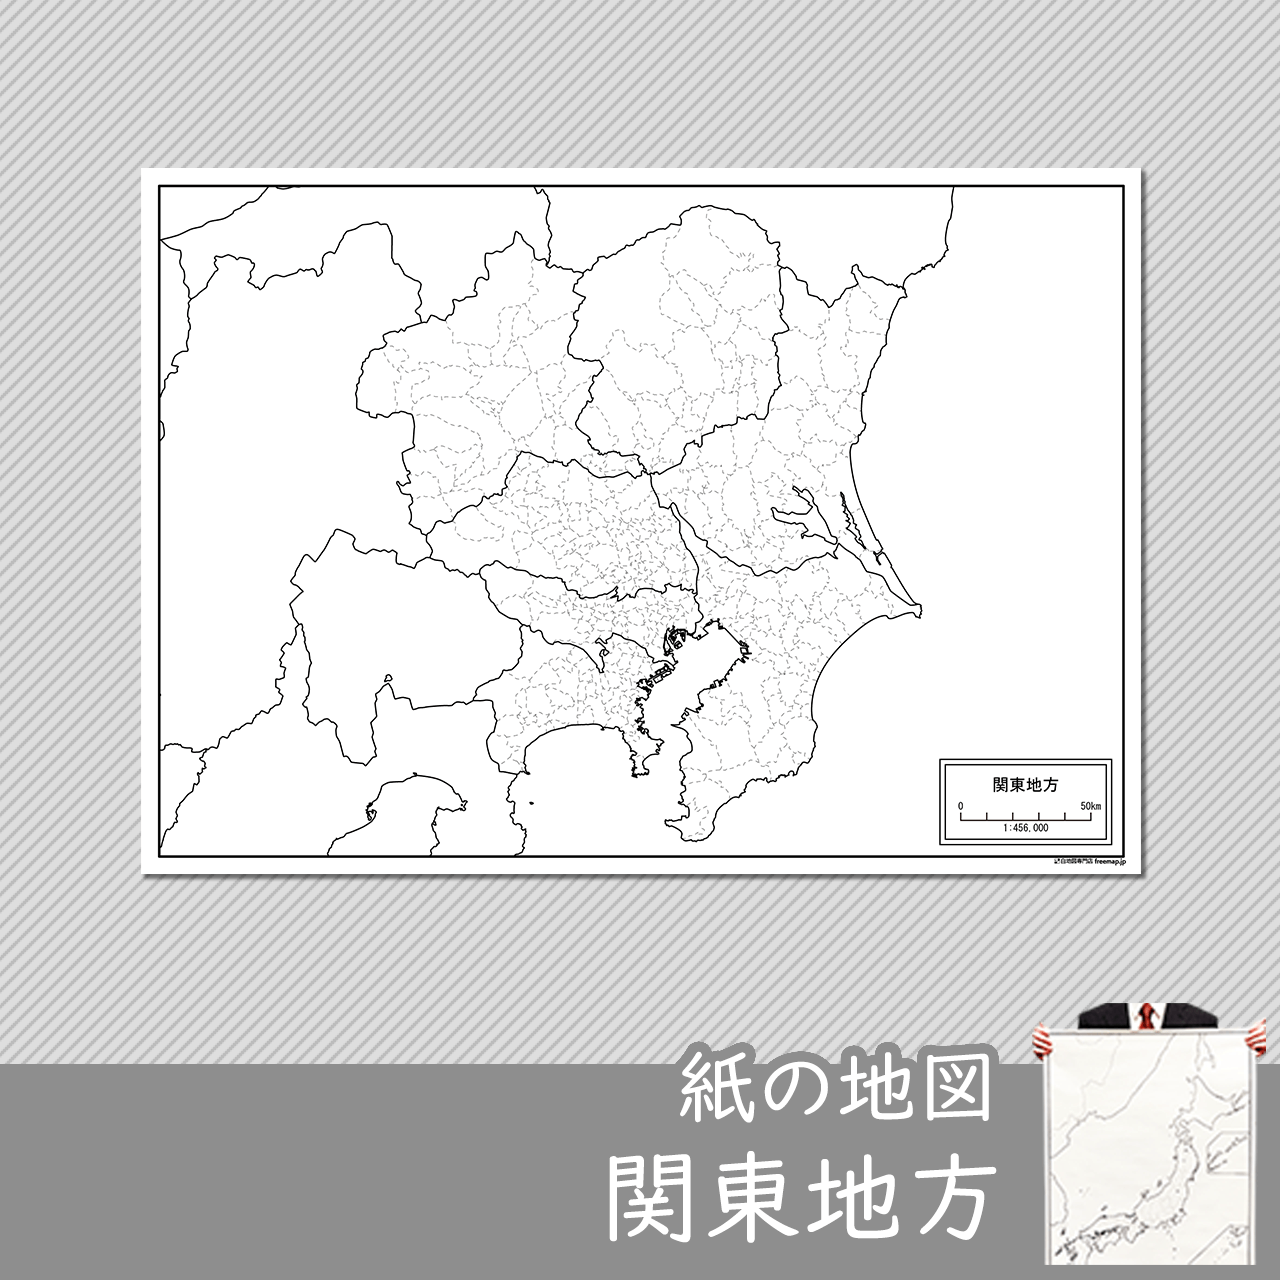 関東地方の紙の白地図のサムネイル